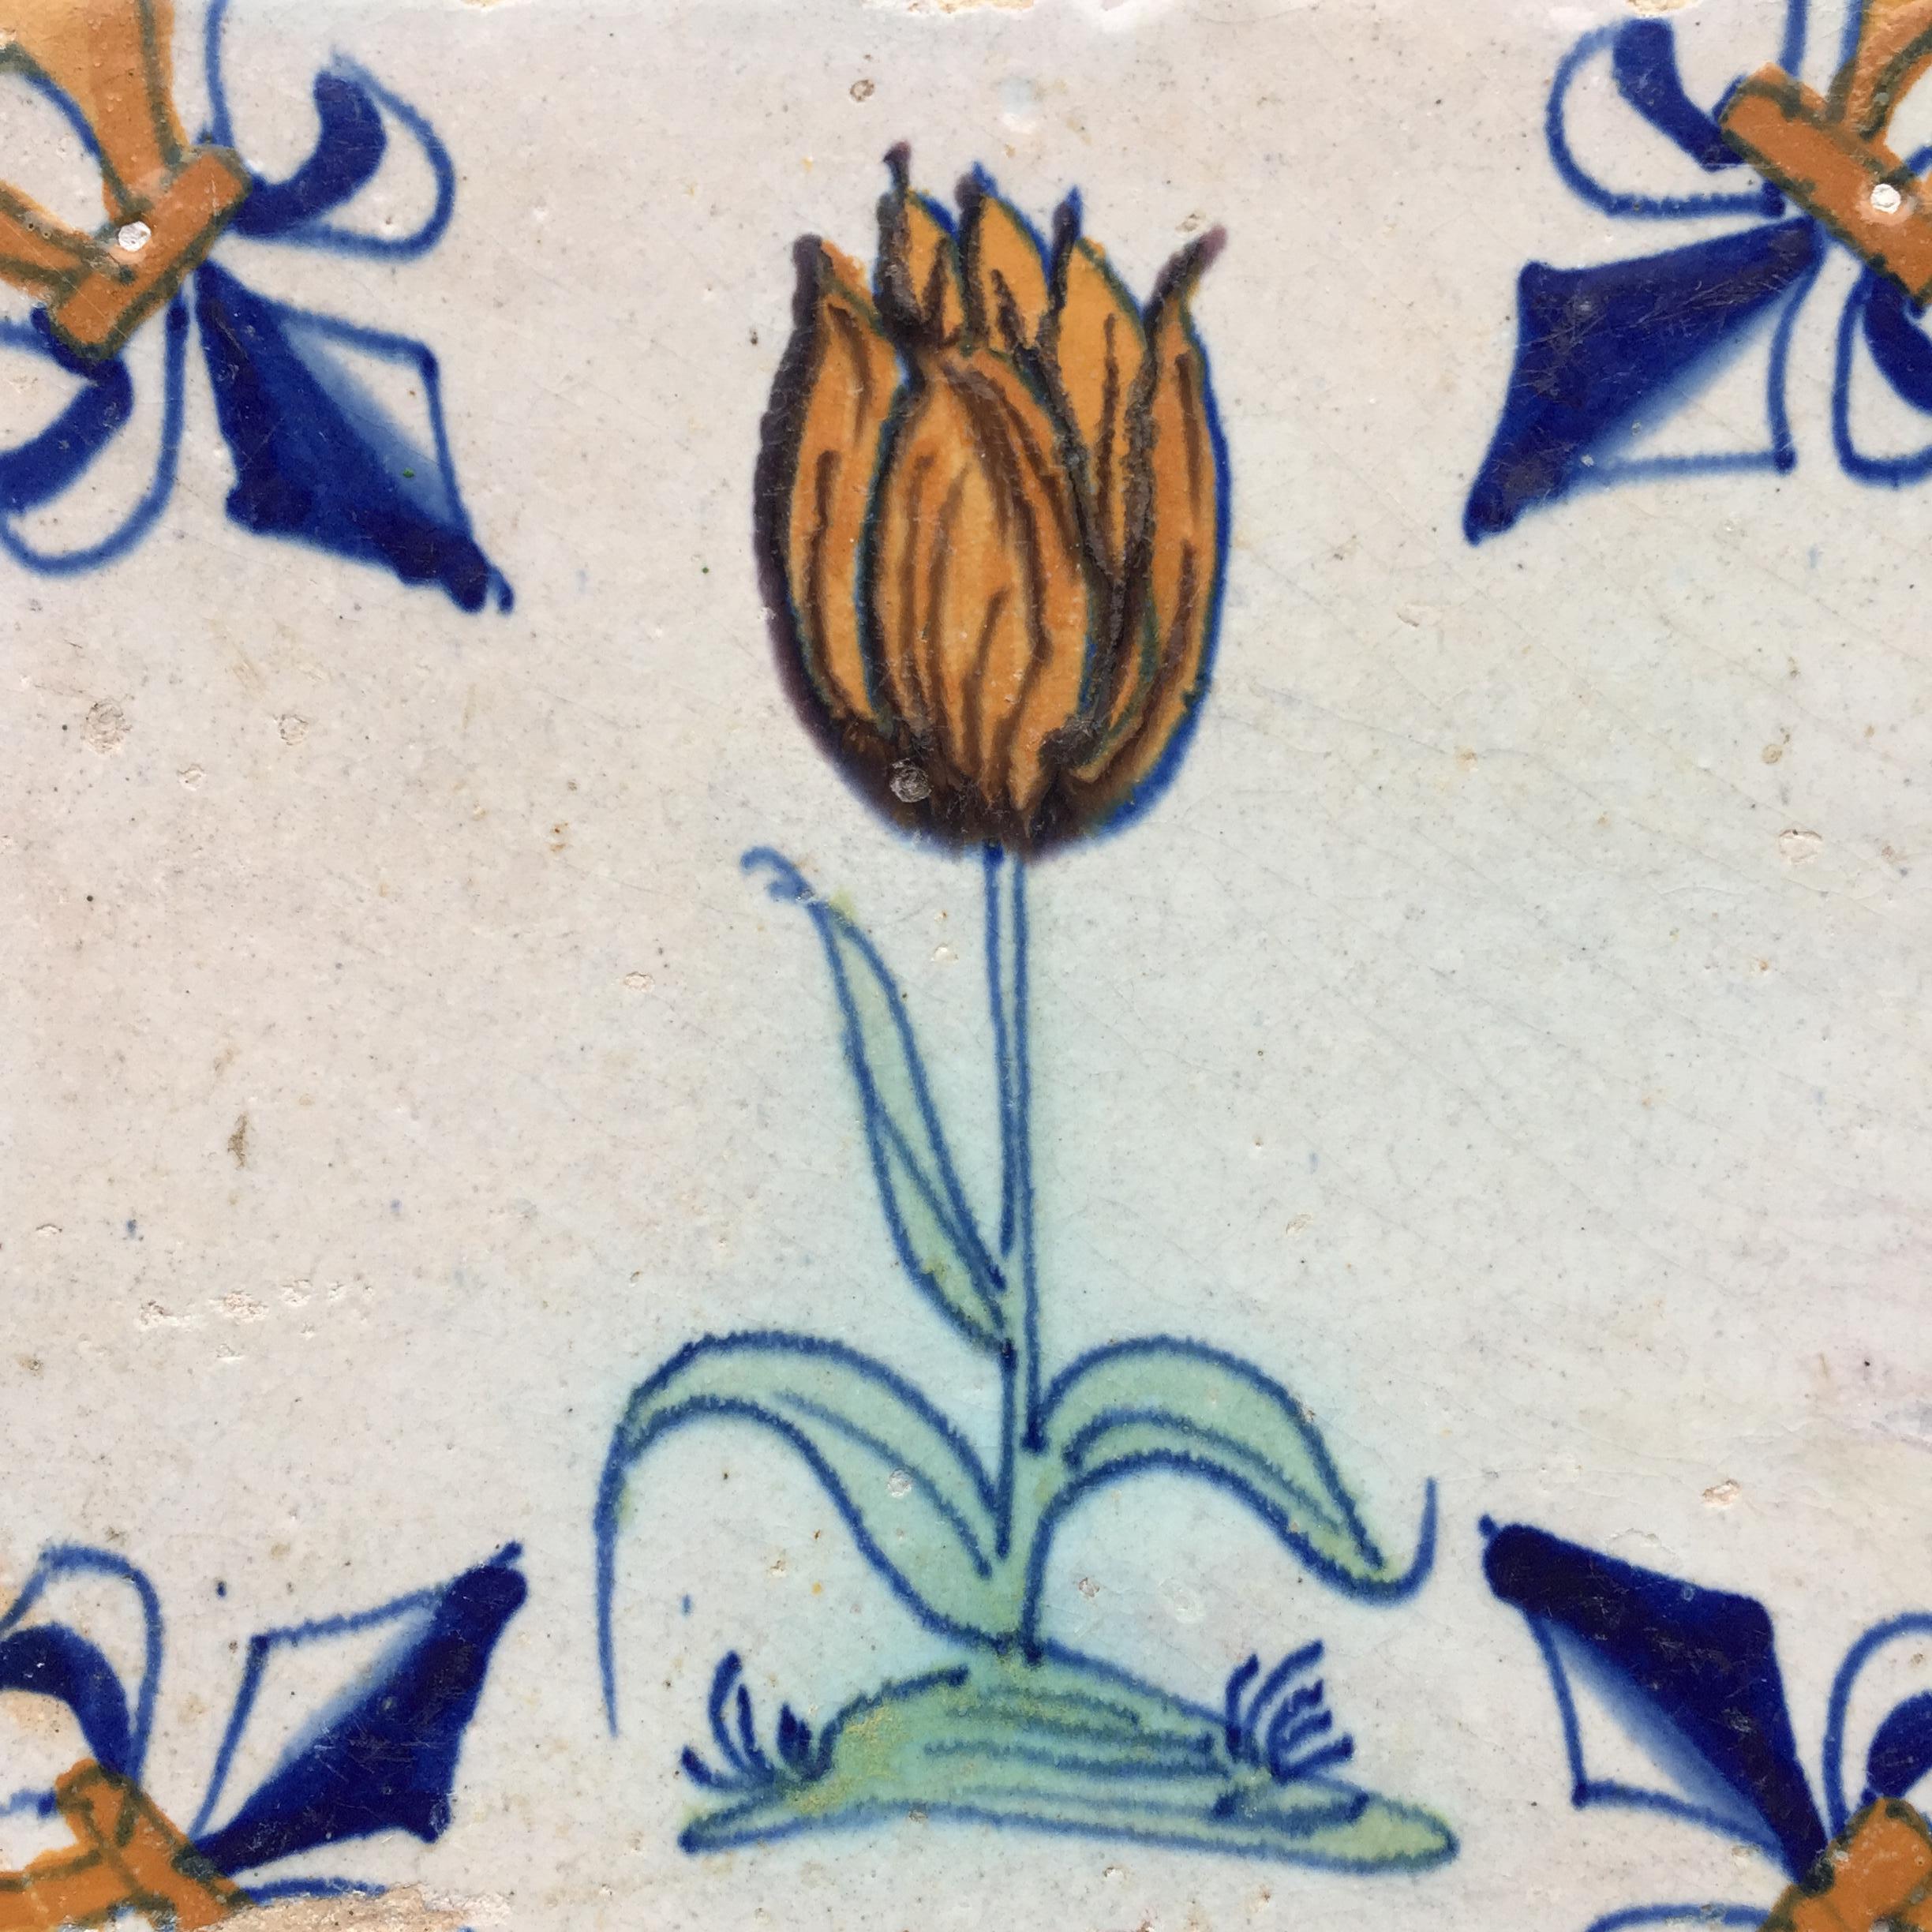 Les Pays-Bas
Vers 1620 - 1640

Carreau hollandais polychrome à la décoration d'une tulipe flammée orange.
Cette tuile avec une très grande tulipe a été peinte pendant la Tulipmania, lorsque les tulipes étaient aussi chères qu'un canal et étaient un